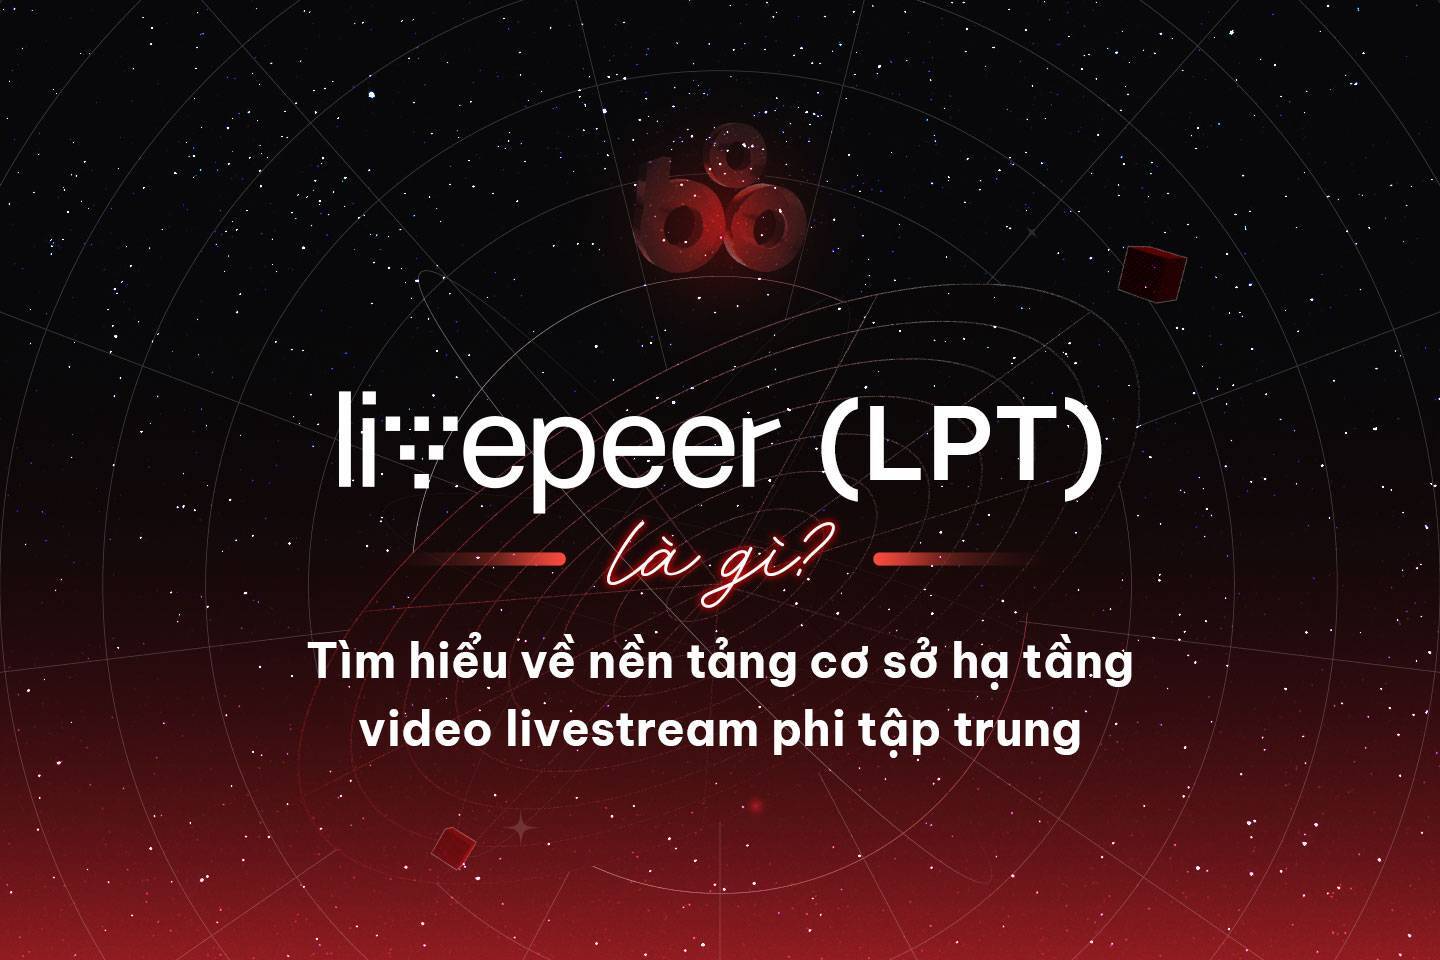 Livepeer lpt Là Gì Tìm Hiểu Về Nền Tảng Cơ Sở Hạ Tầng Video Livestream Phi Tập Trung